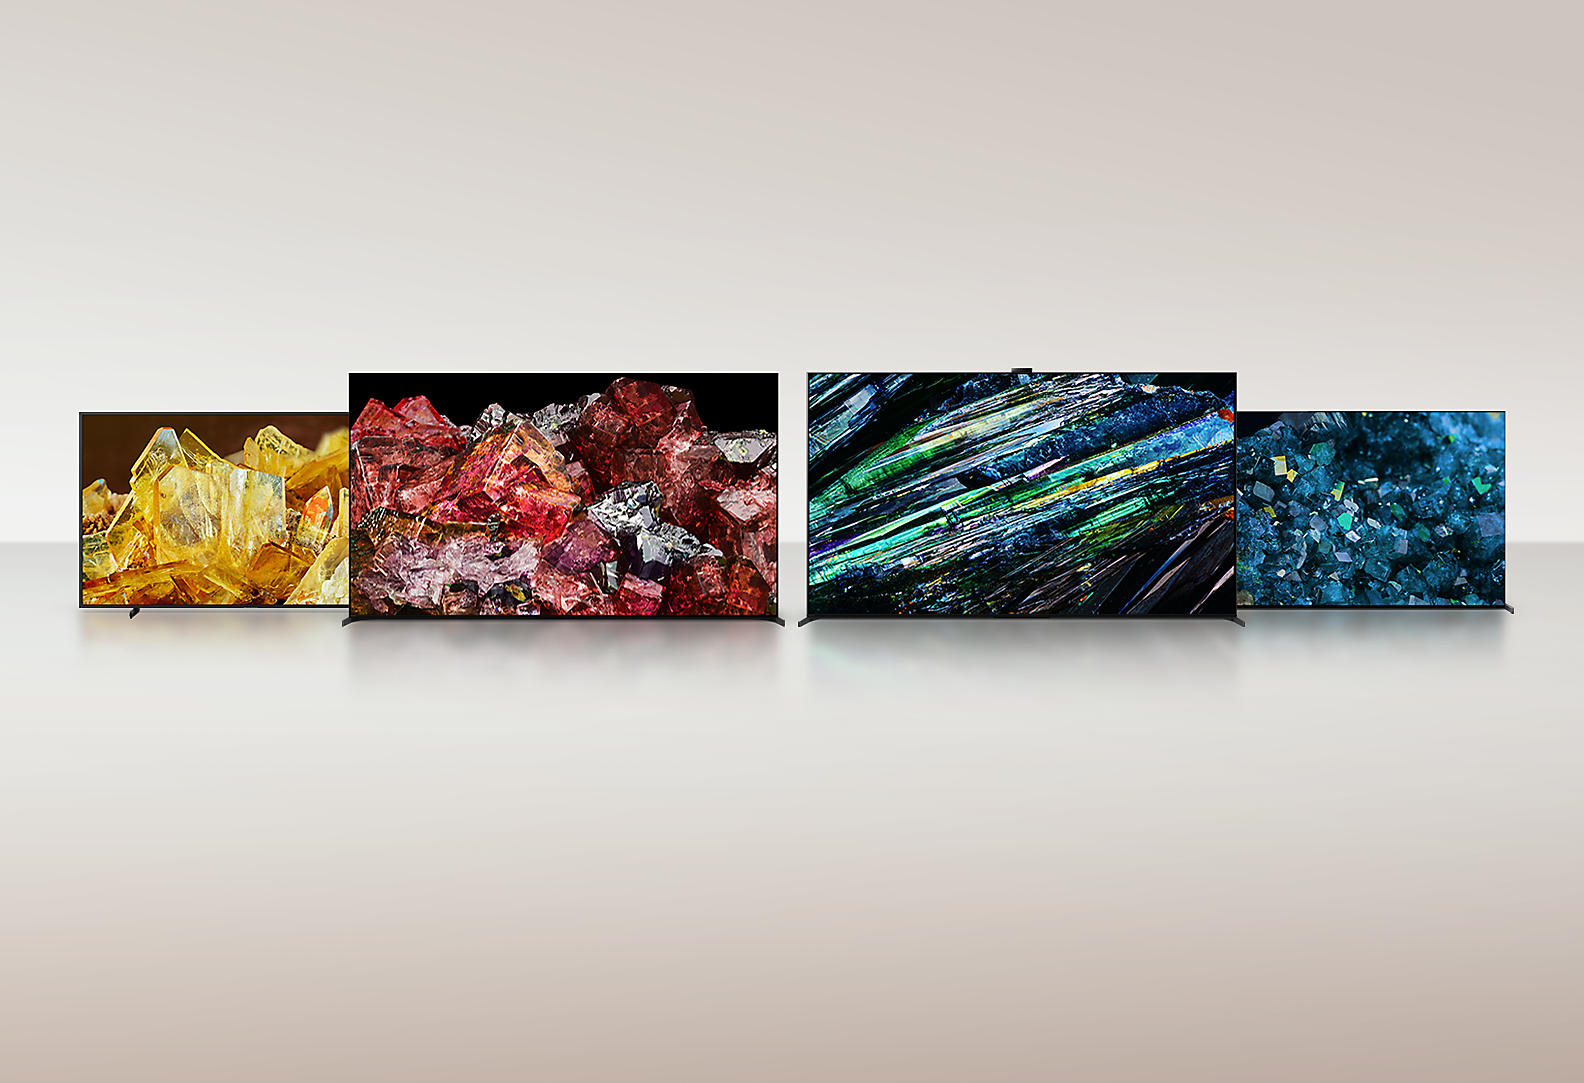 Četiri BRAVIA XR TV-a koja na punom zaslonu prikazuju slike različitih kristala s nevjerojatnim pojedinostima i bojama